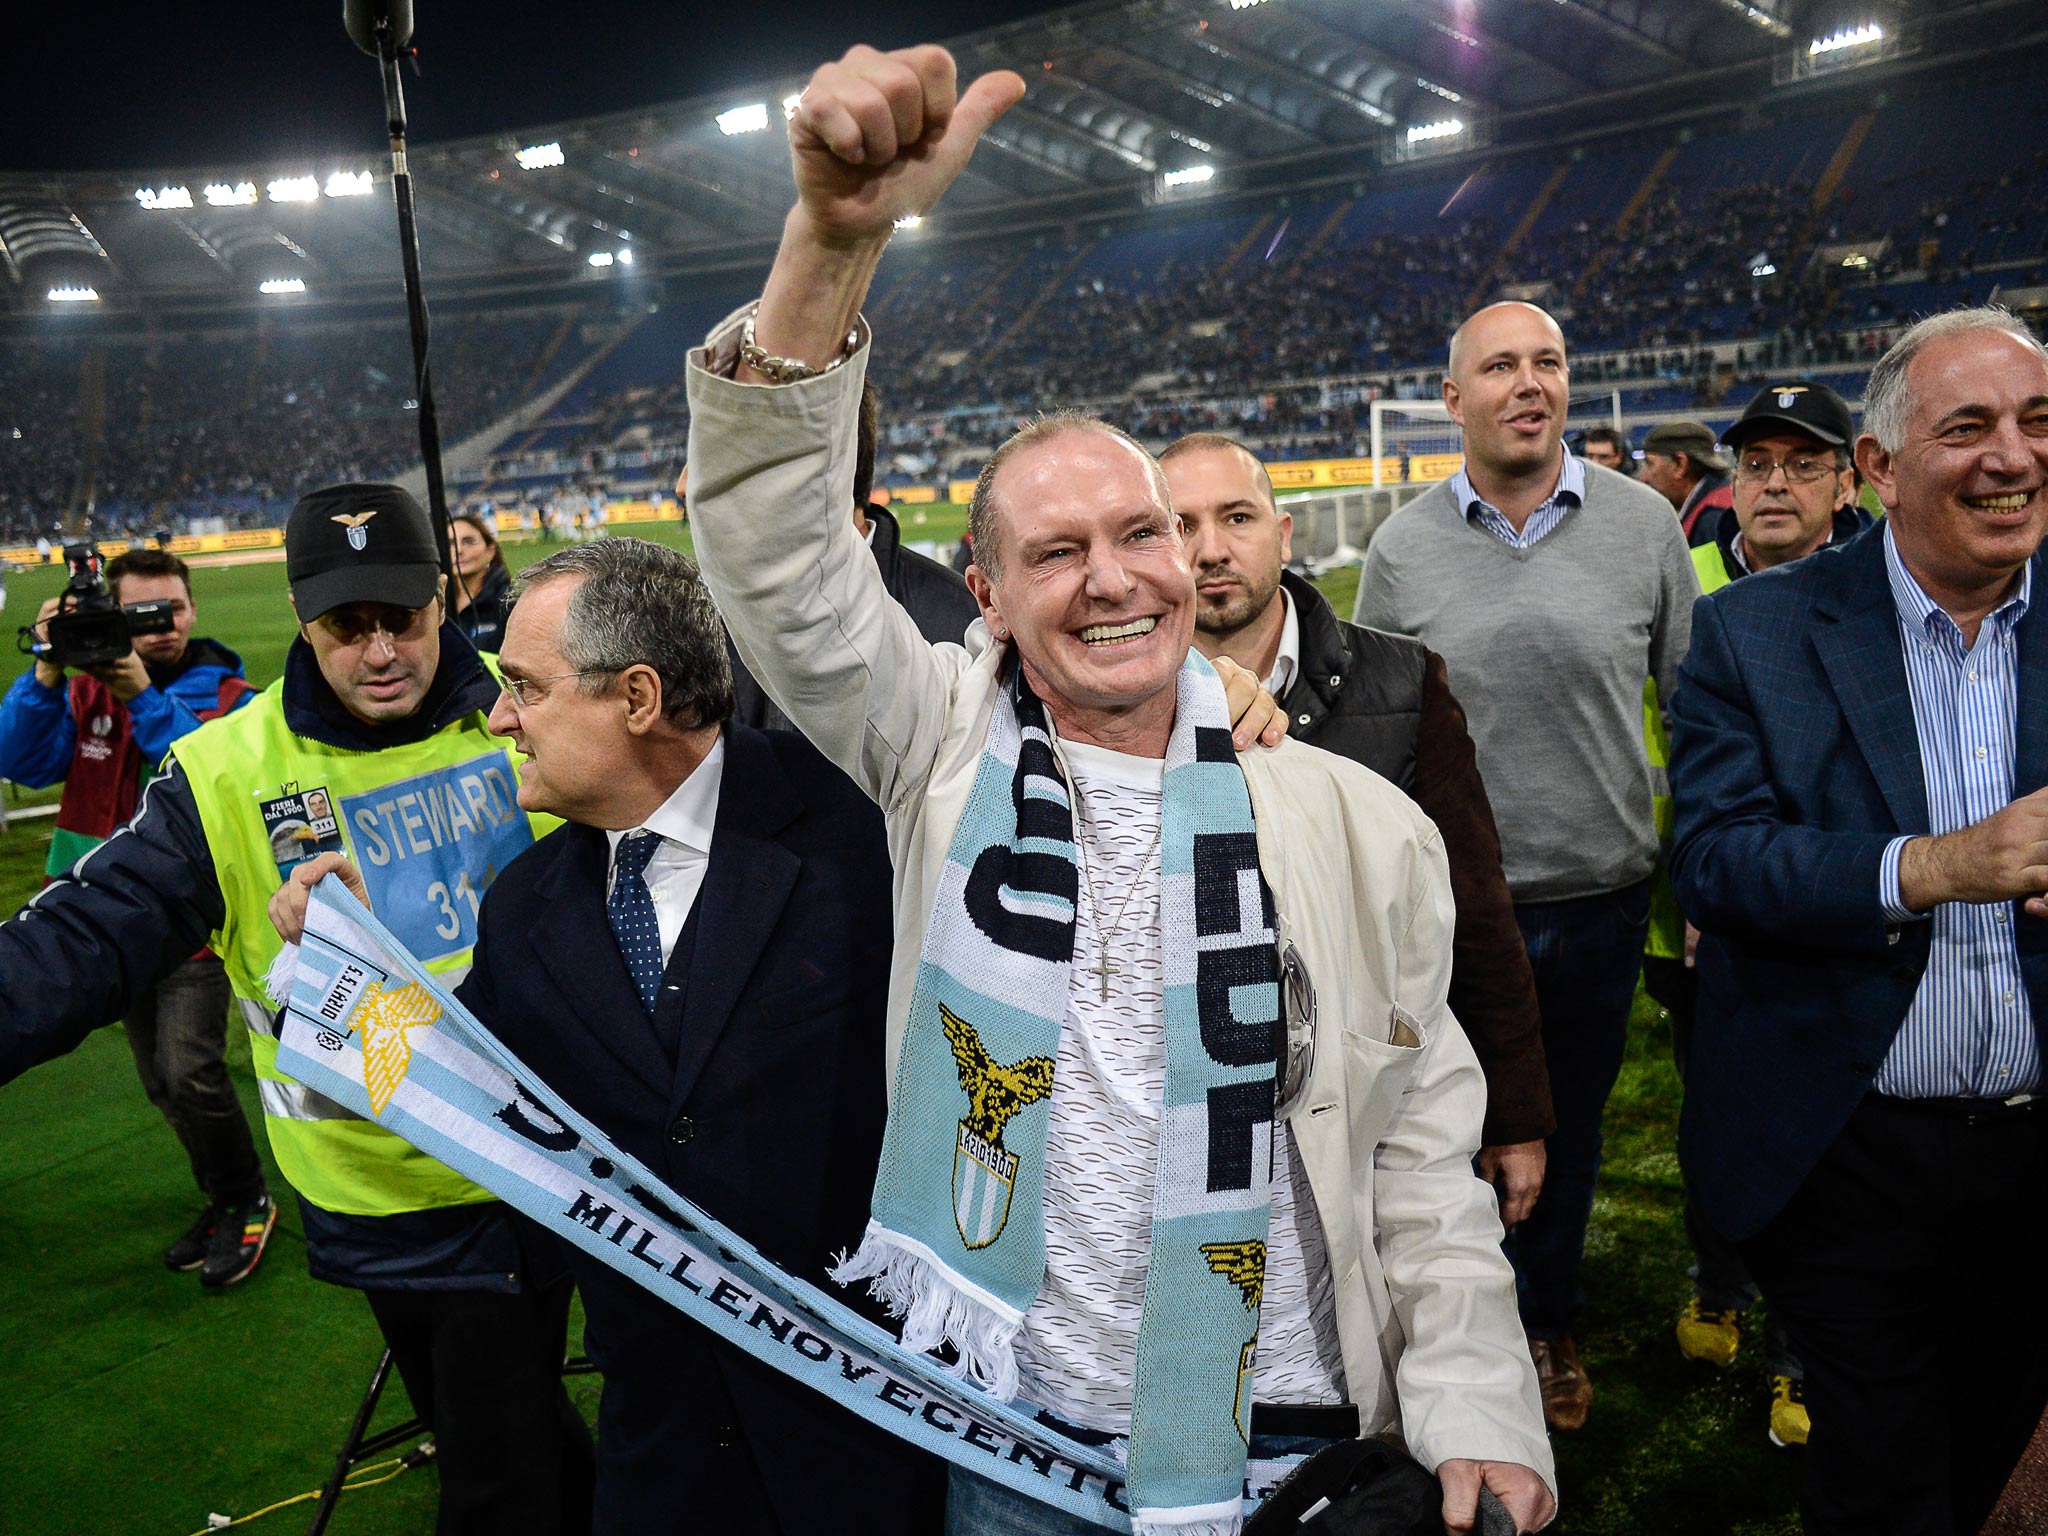 Paul Gascoigne pictured in November last year at a Lazio match